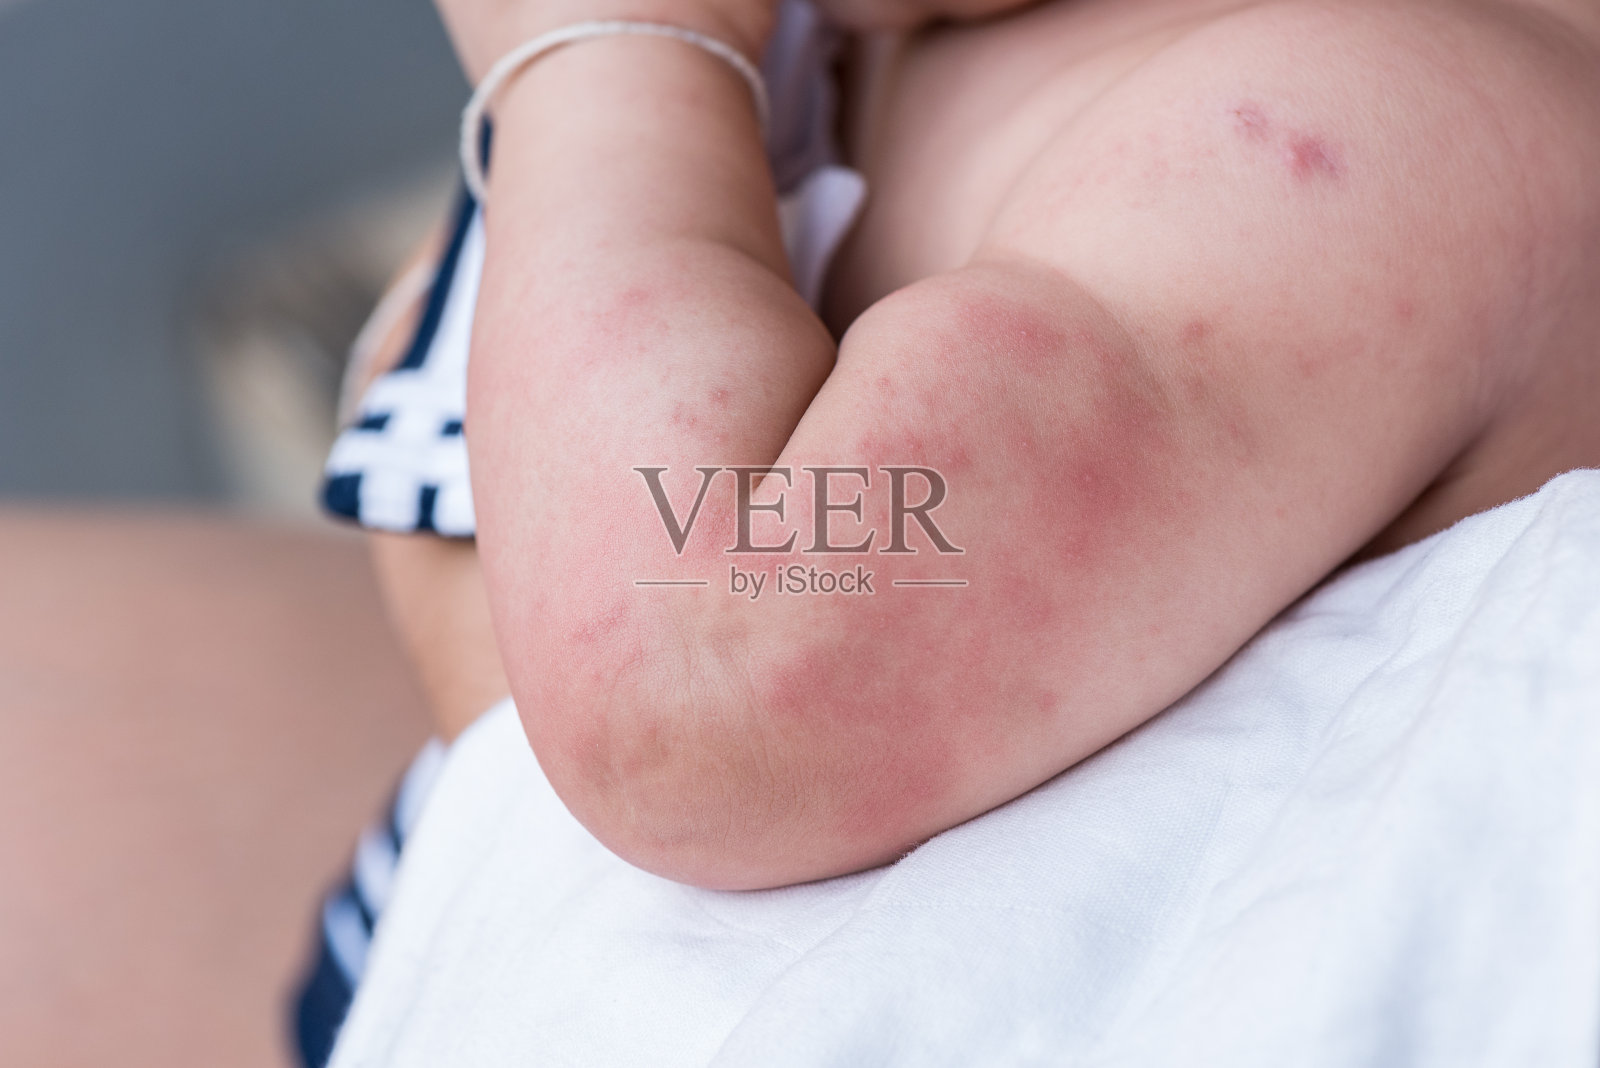 婴儿皮肤质地患严重荨麻疹、荨麻疹。照片摄影图片